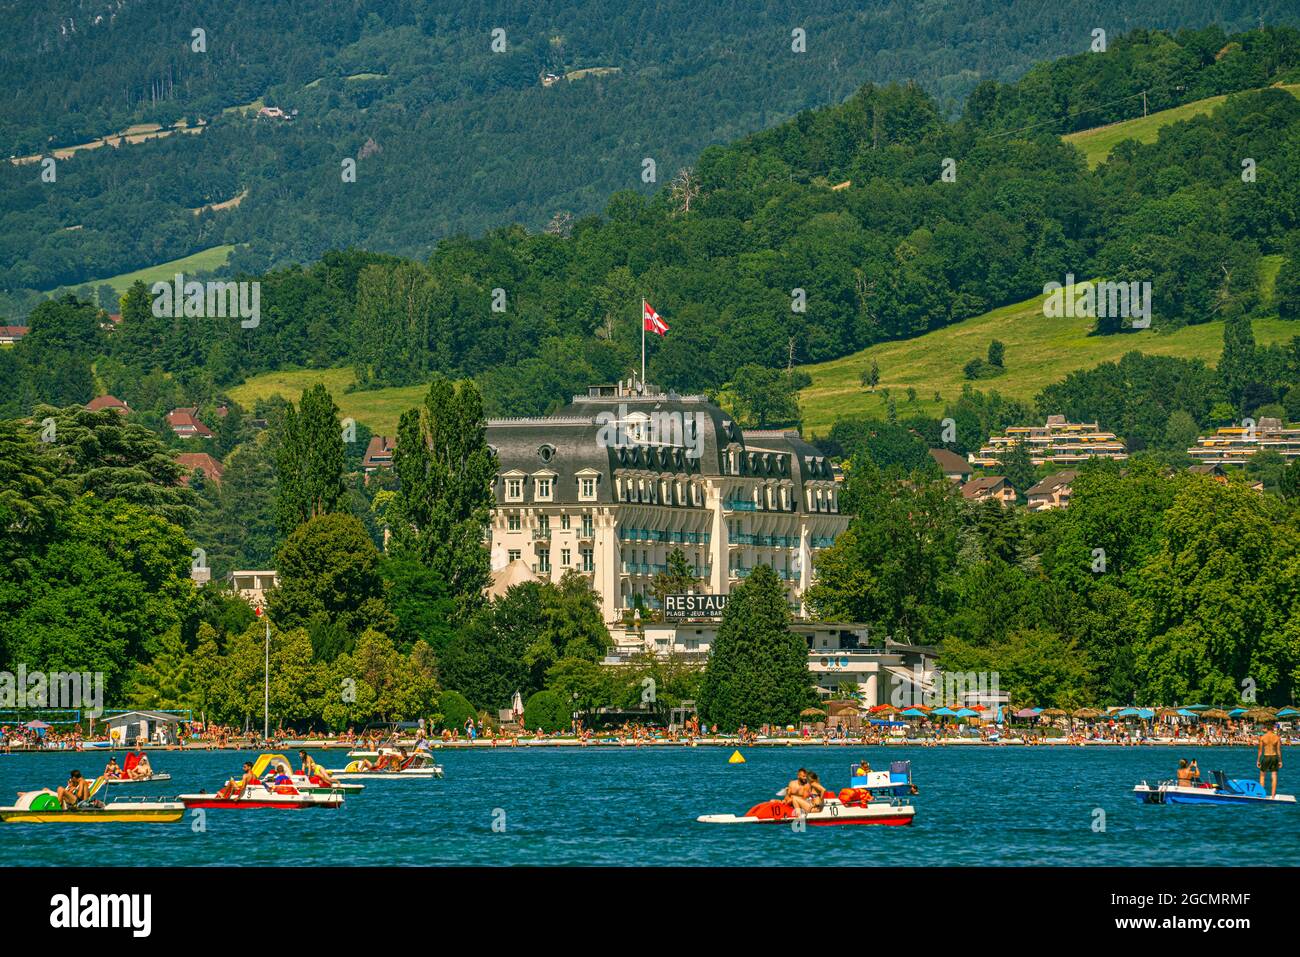 Der Kaiserpalast blickt direkt auf den See Annecy, der von Touristen und Einheimischen für Sommerferien genutzt wird. Annecy, Département Savoie, Auvergne-Rhône-Alpes RE Stockfoto